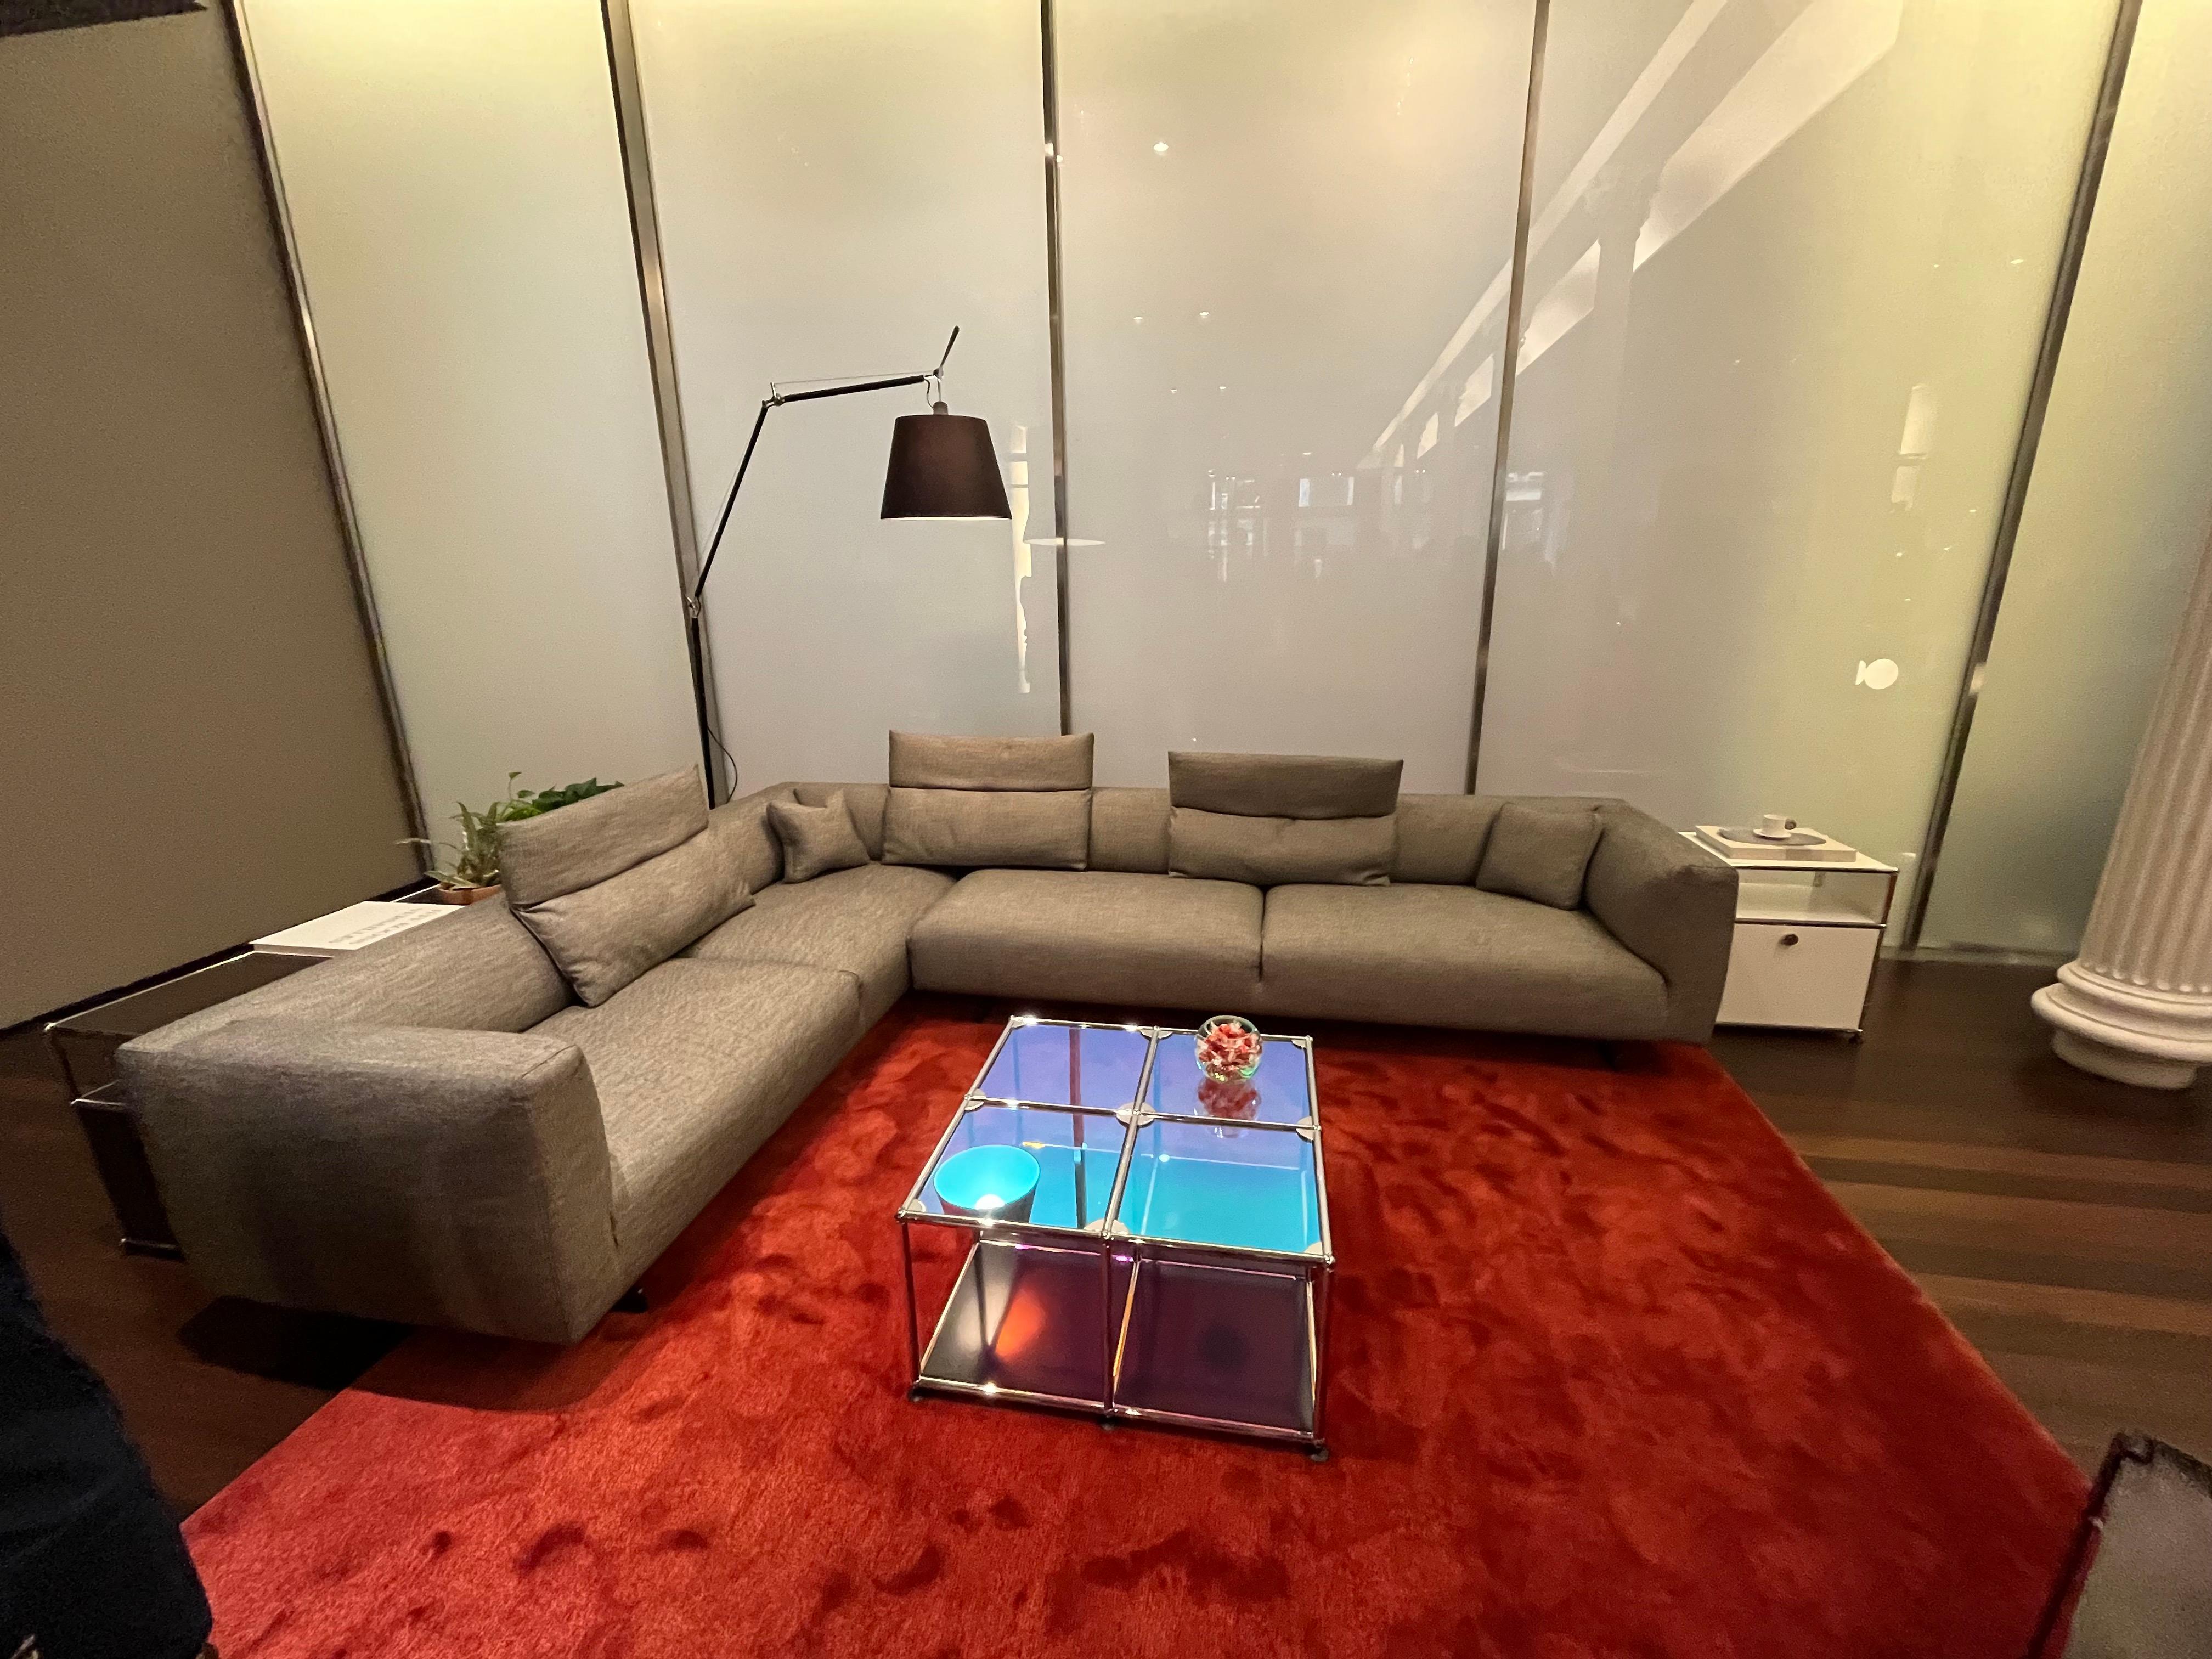 Zanotta Kim Sectional Sofa Designed by Ludovica & Roberto Palomba - In Stock 11